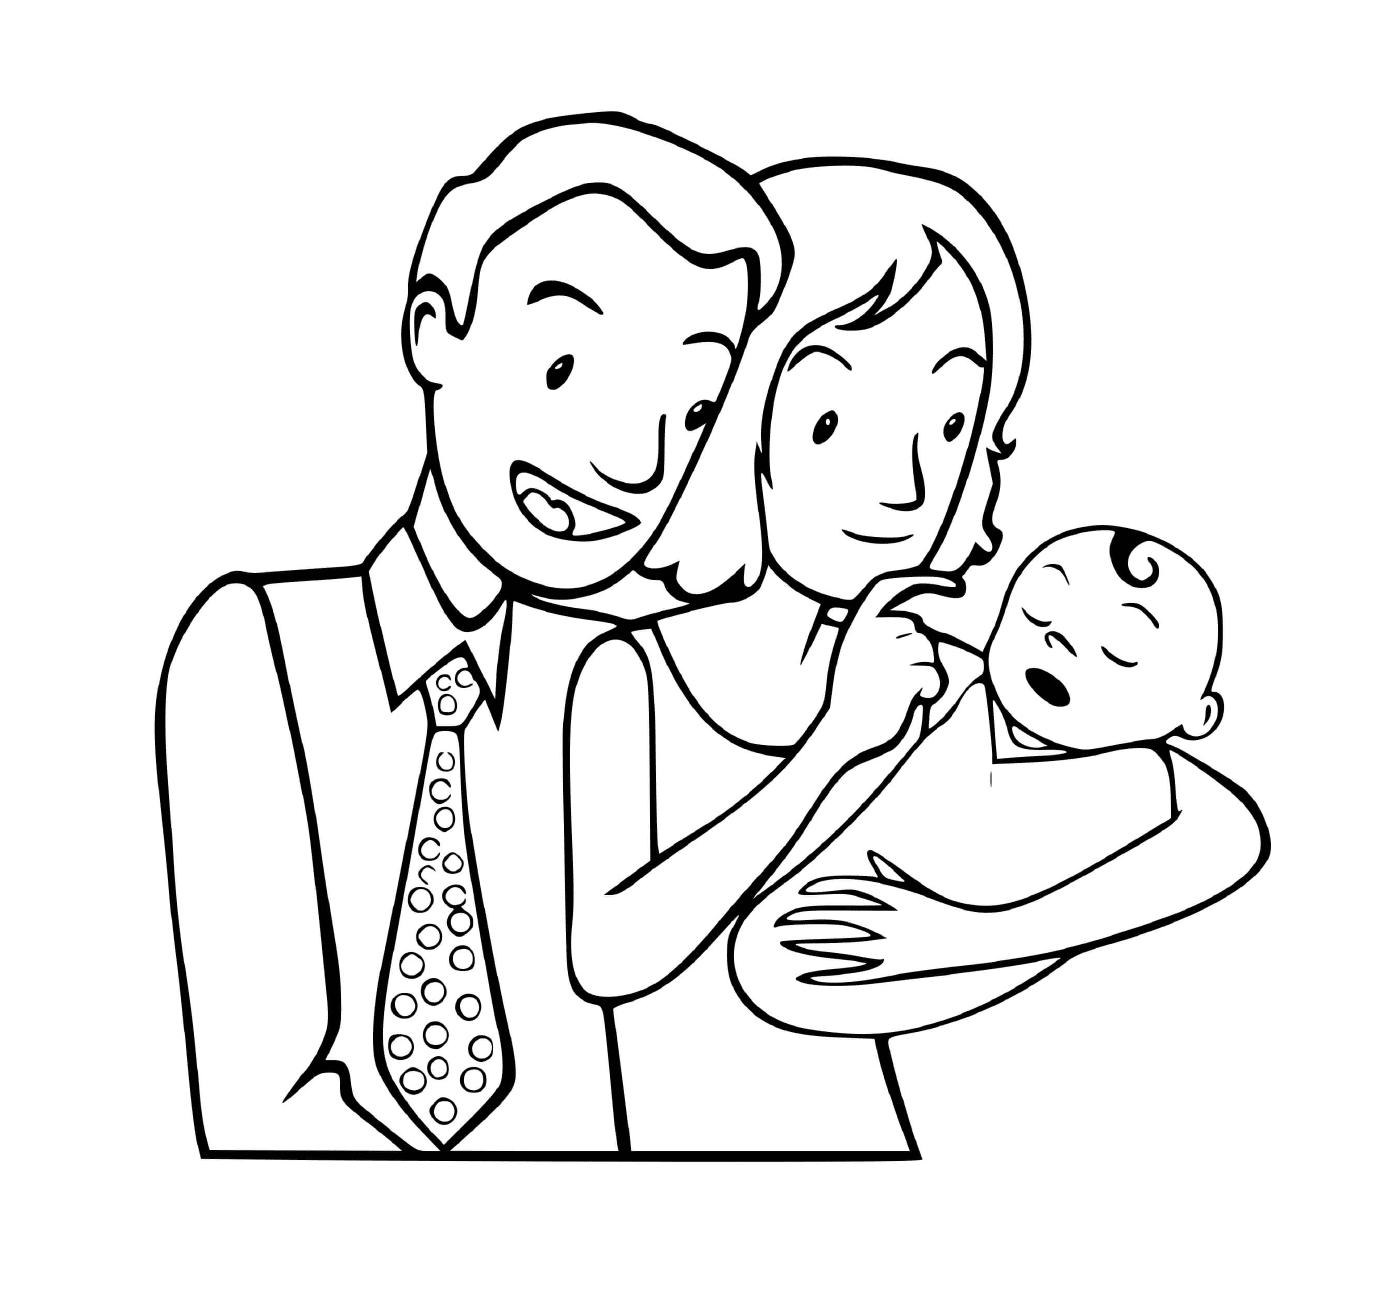  नवजात शिशु के साथ एक छोटा परिवार 